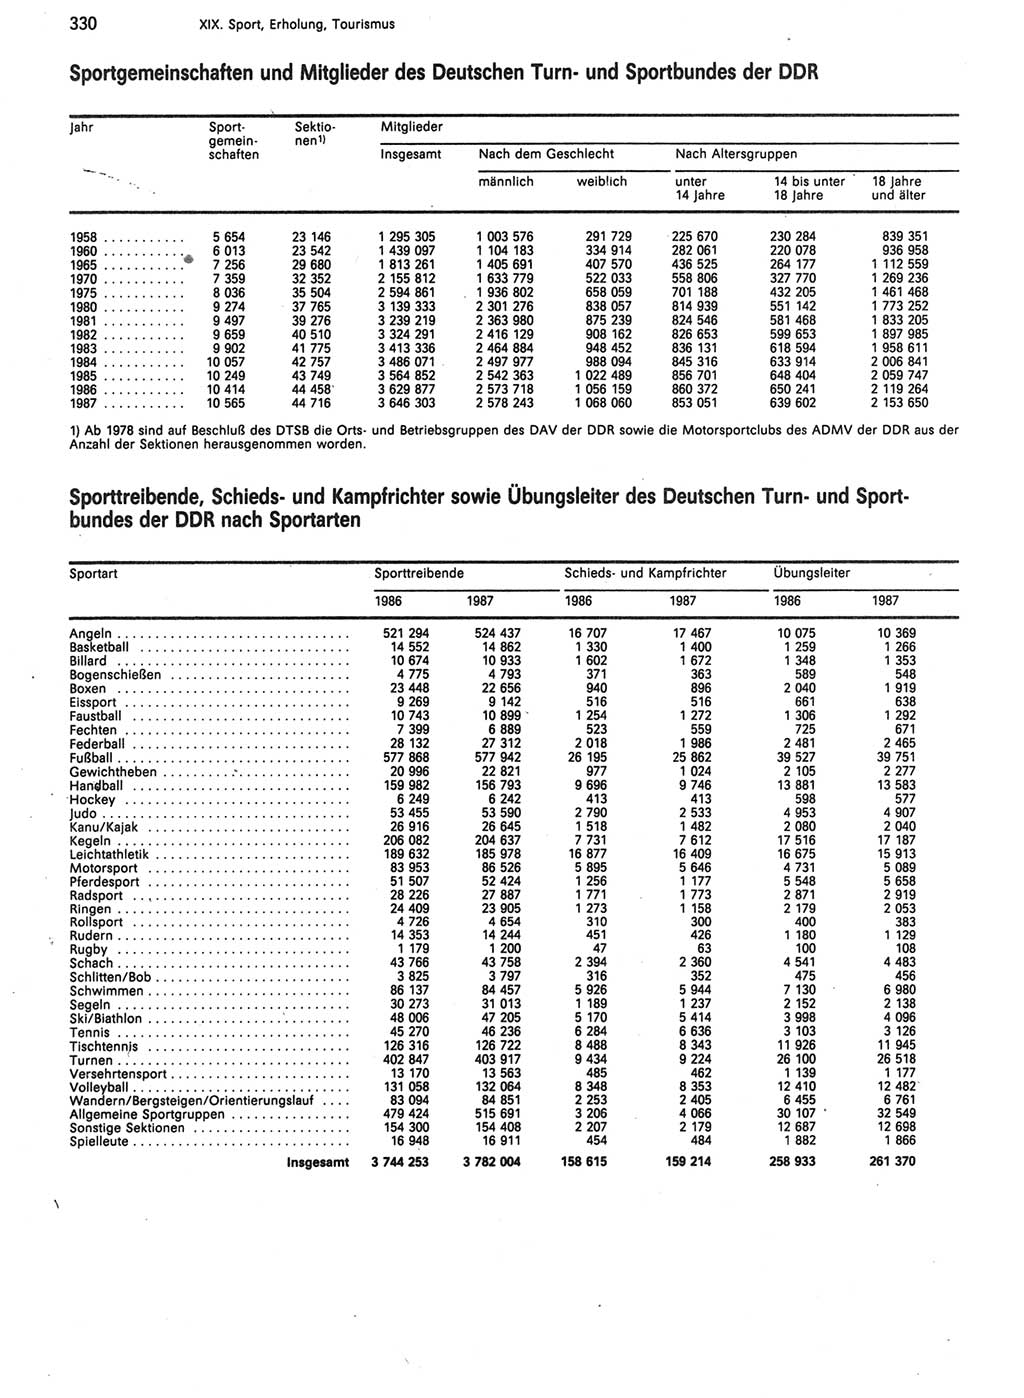 Statistisches Jahrbuch der Deutschen Demokratischen Republik (DDR) 1988, Seite 330 (Stat. Jb. DDR 1988, S. 330)